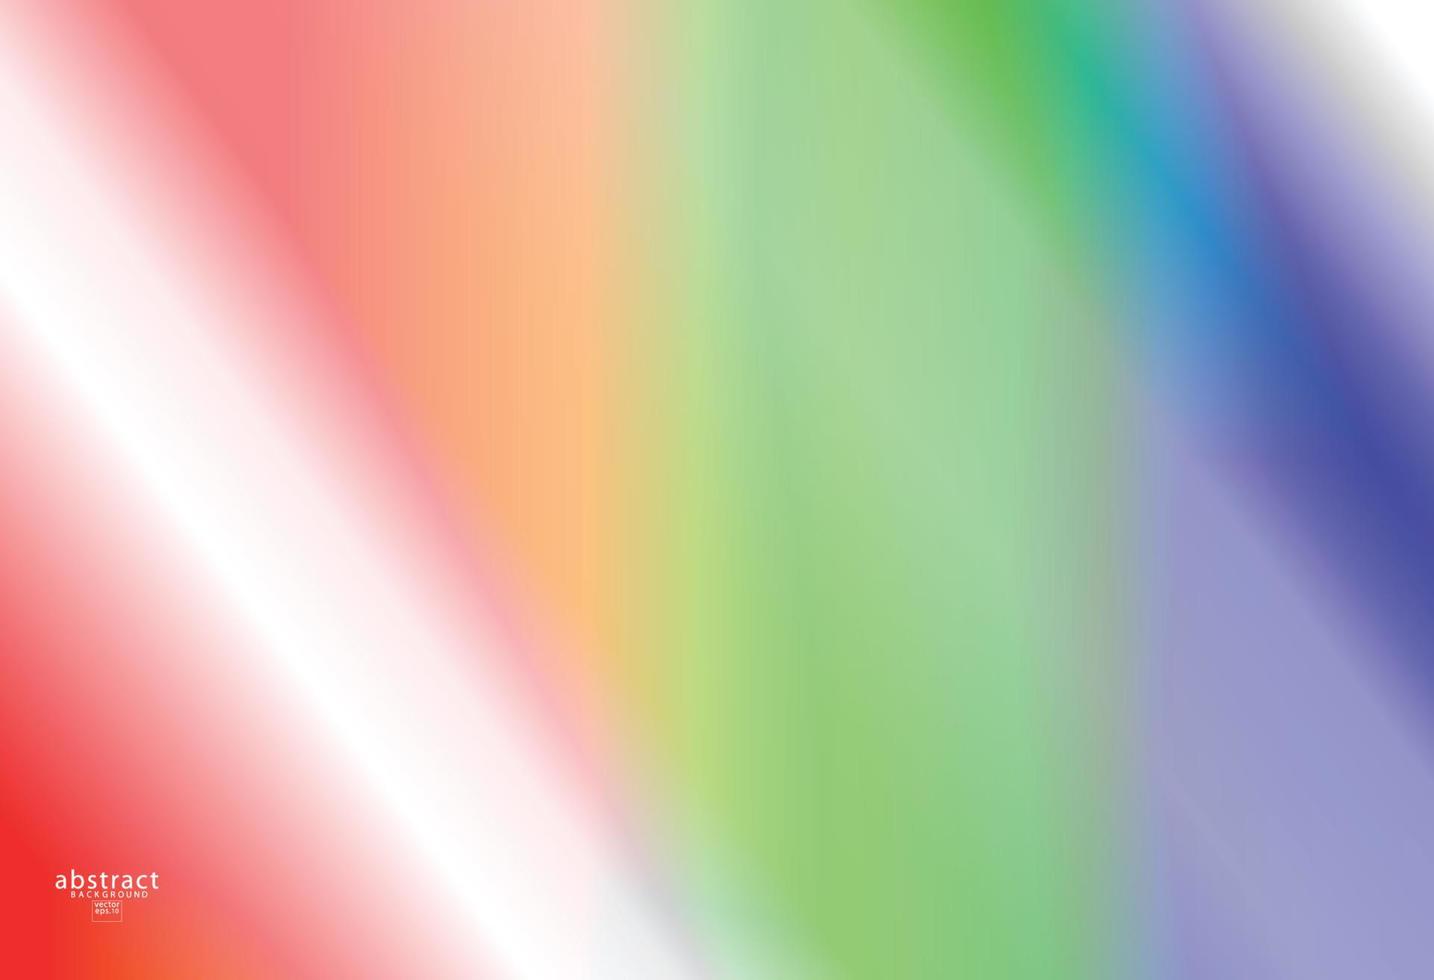 abstrakt suddig gradient mesh bakgrund ljusa regnbågens färger. färgglad slät mjuk banner mall. kreativa livliga vektorillustration vektor